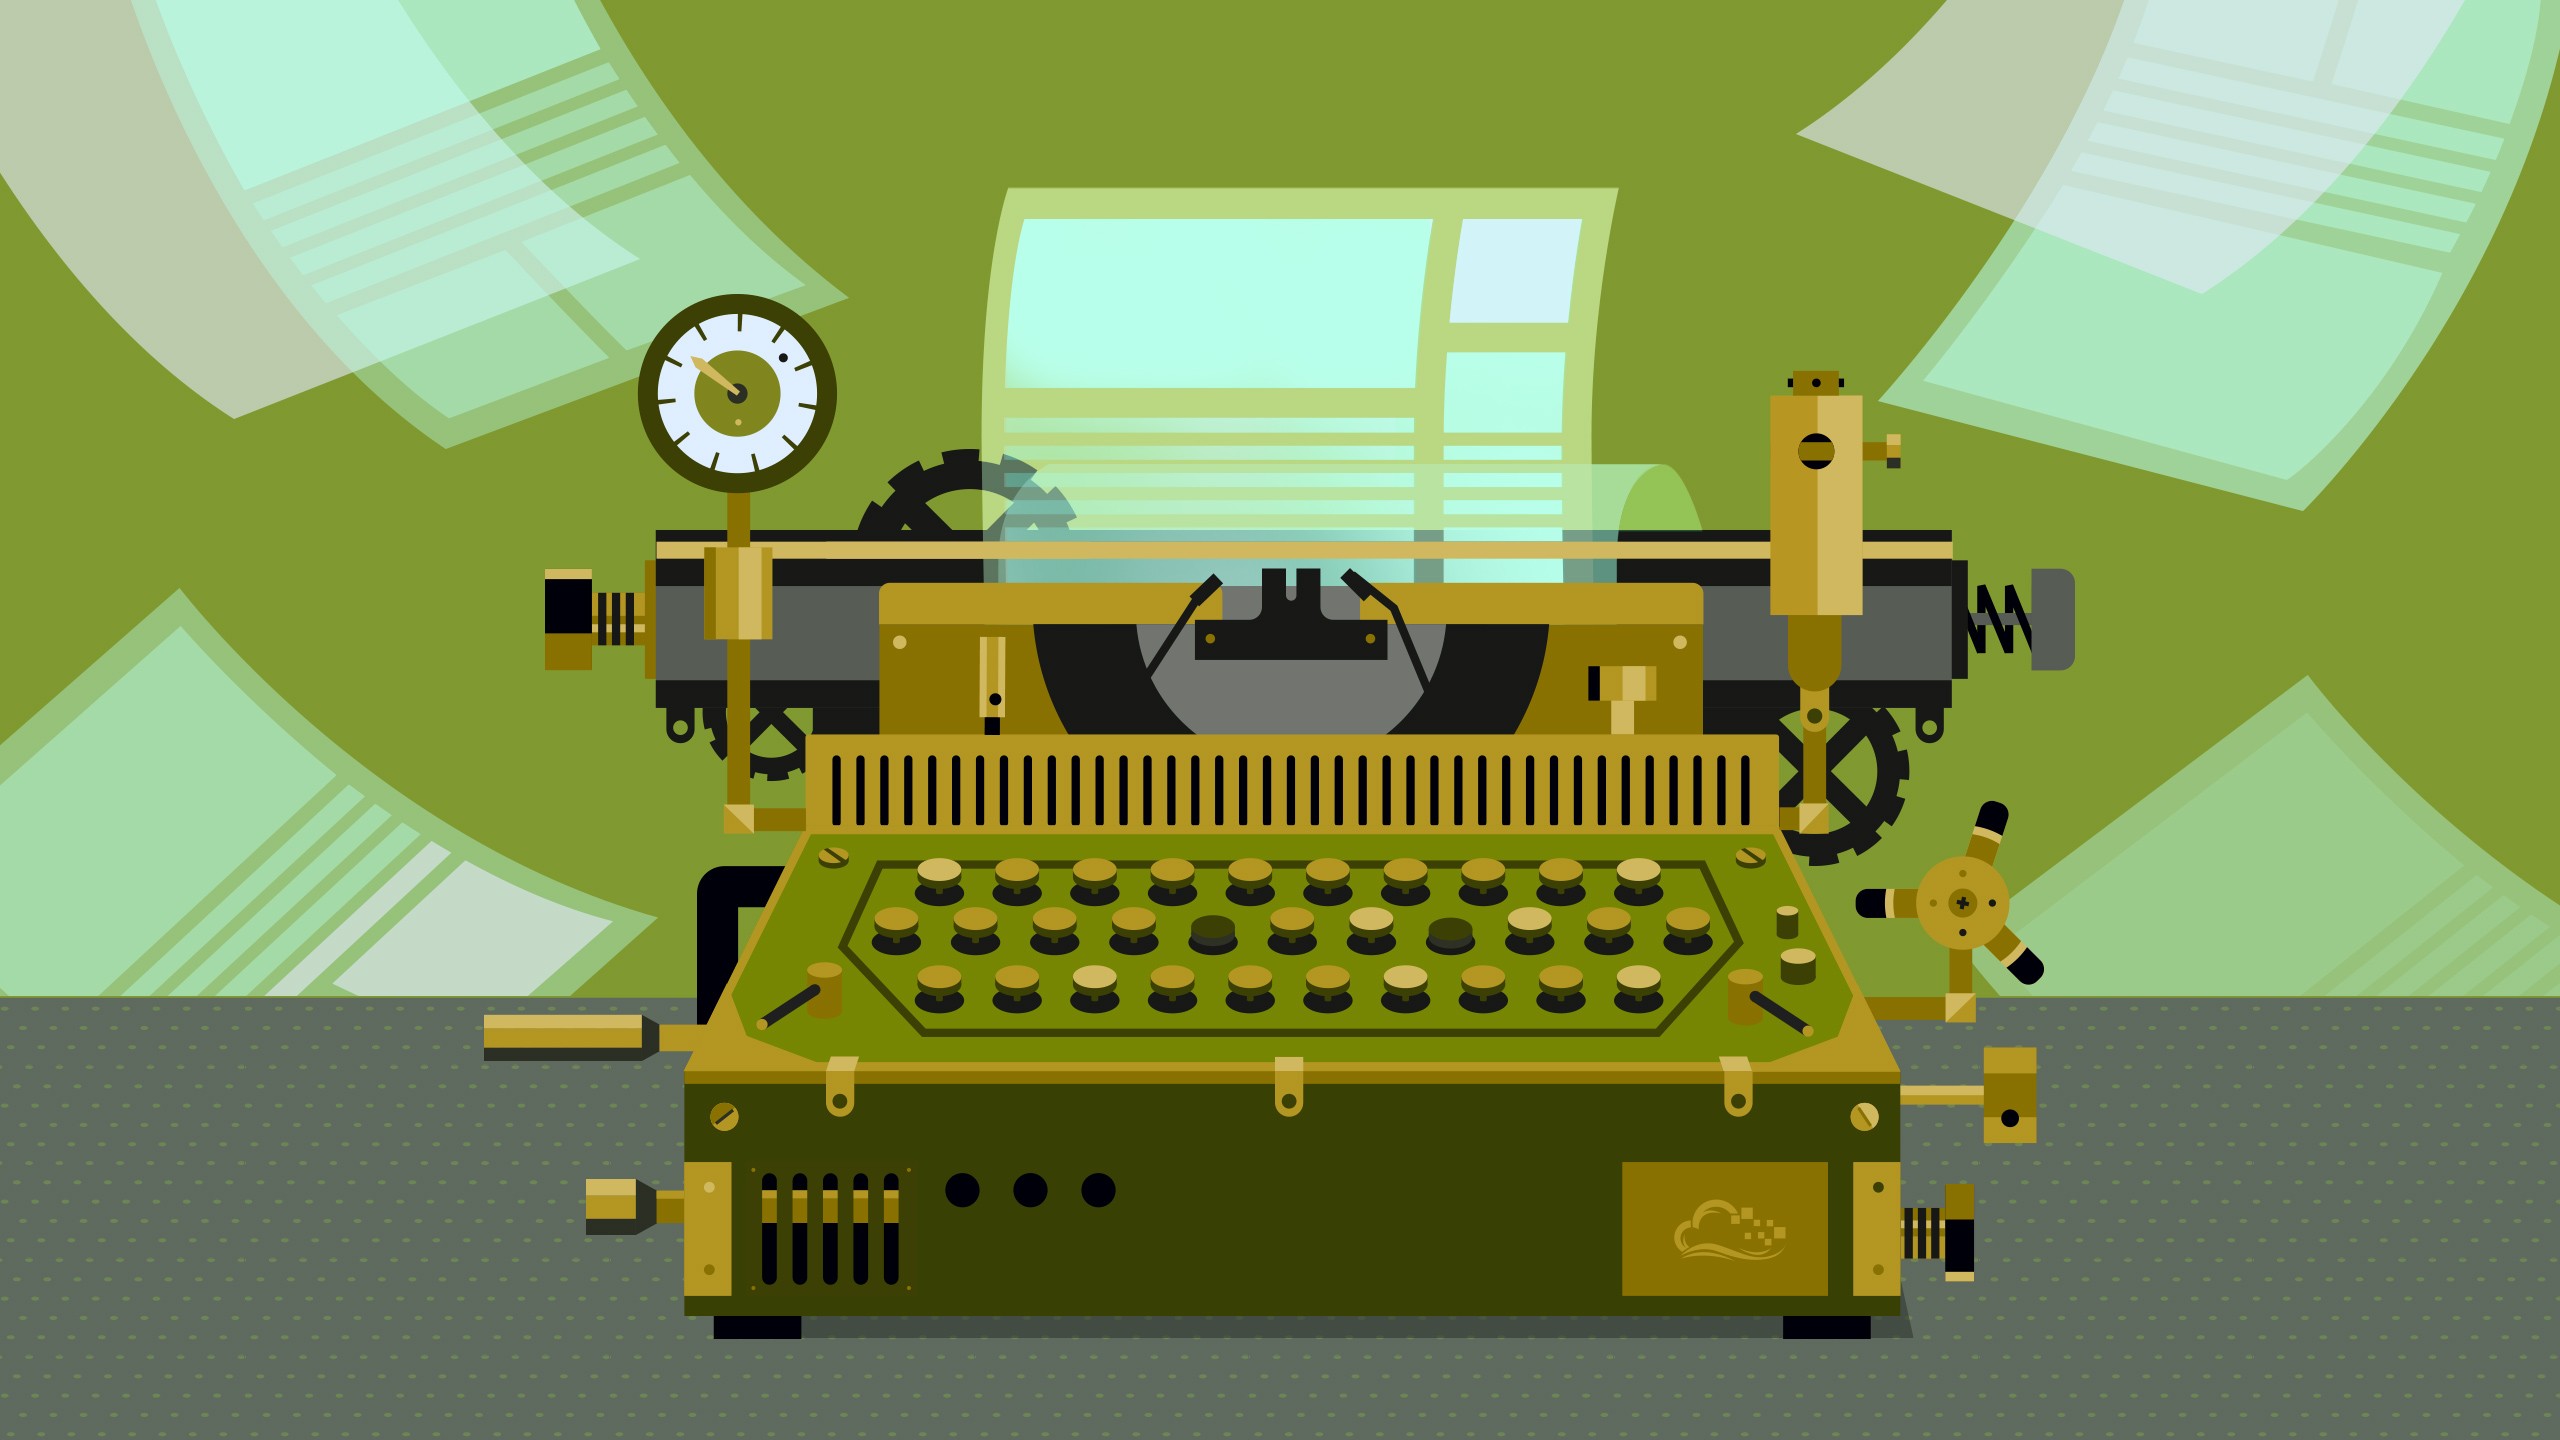 Digitalocean Typewriters Paper Digital Art 2560x1440